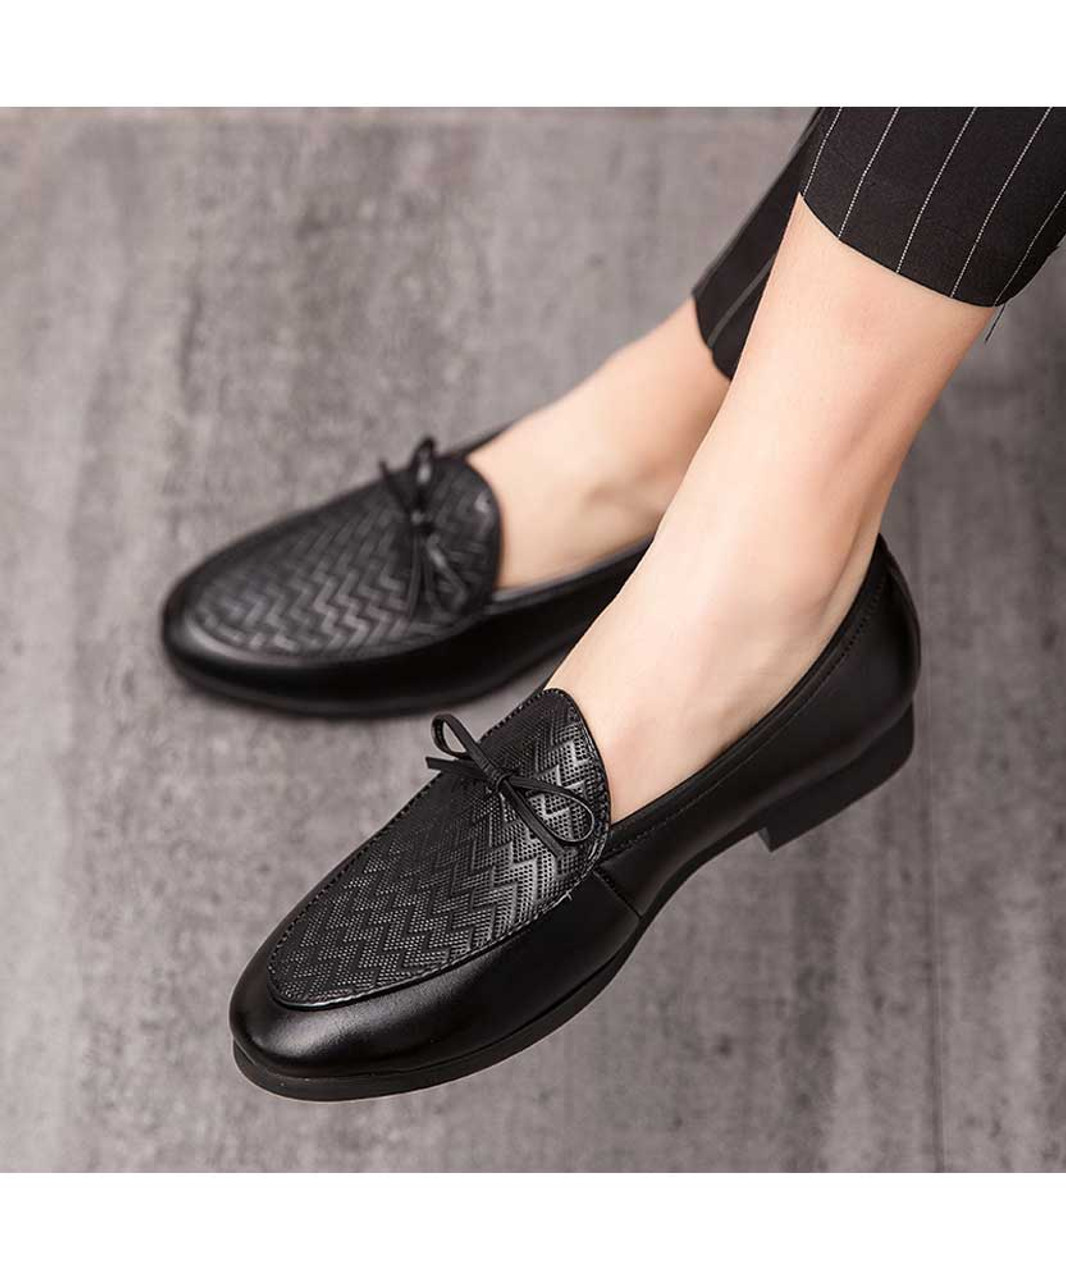 Black weave pattern bow tie leather slip on dress shoe | Mens dress ...